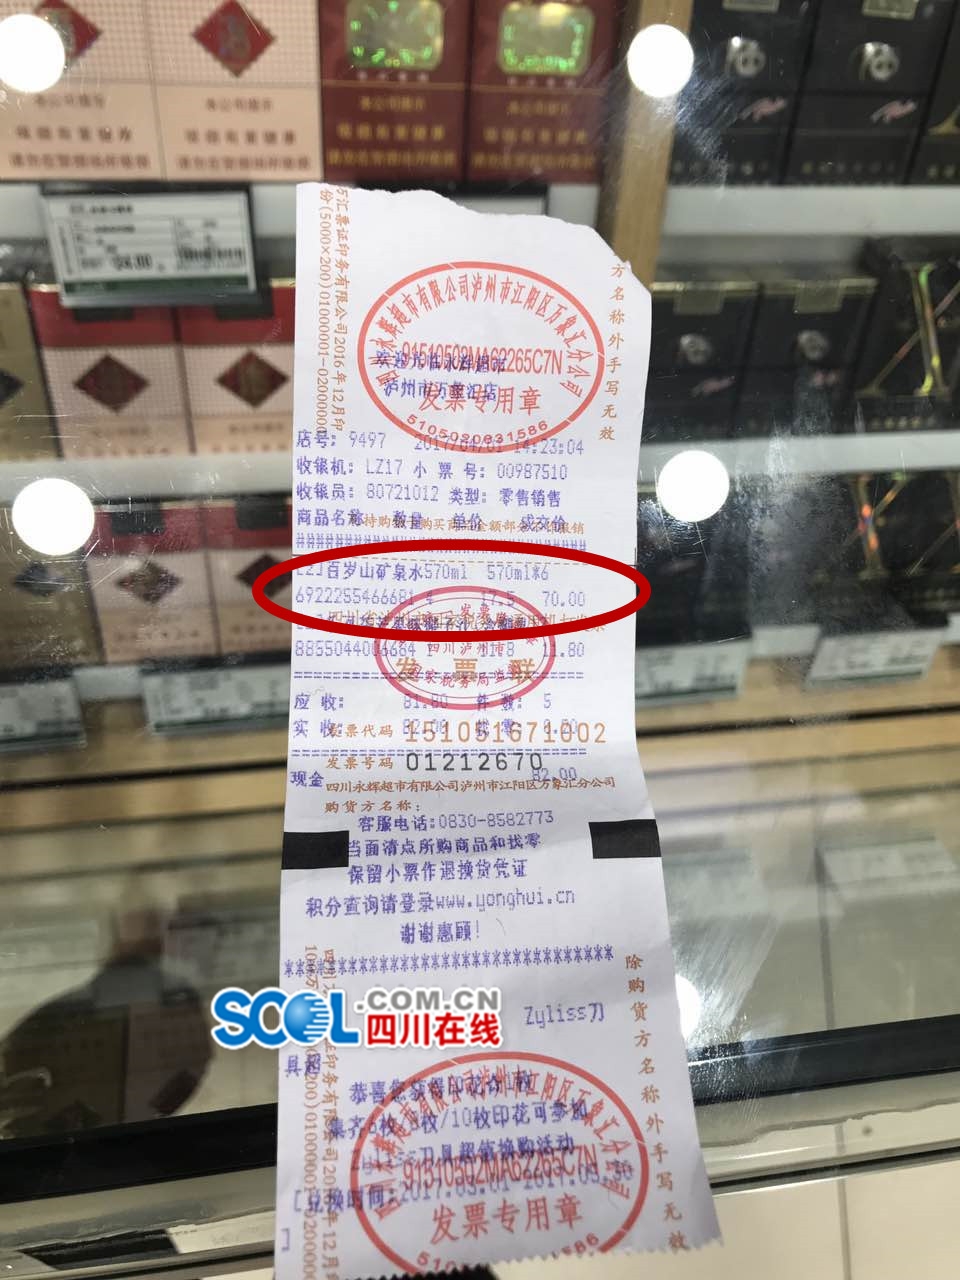 泸州永辉超市:标价24元矿泉水 结账收29元